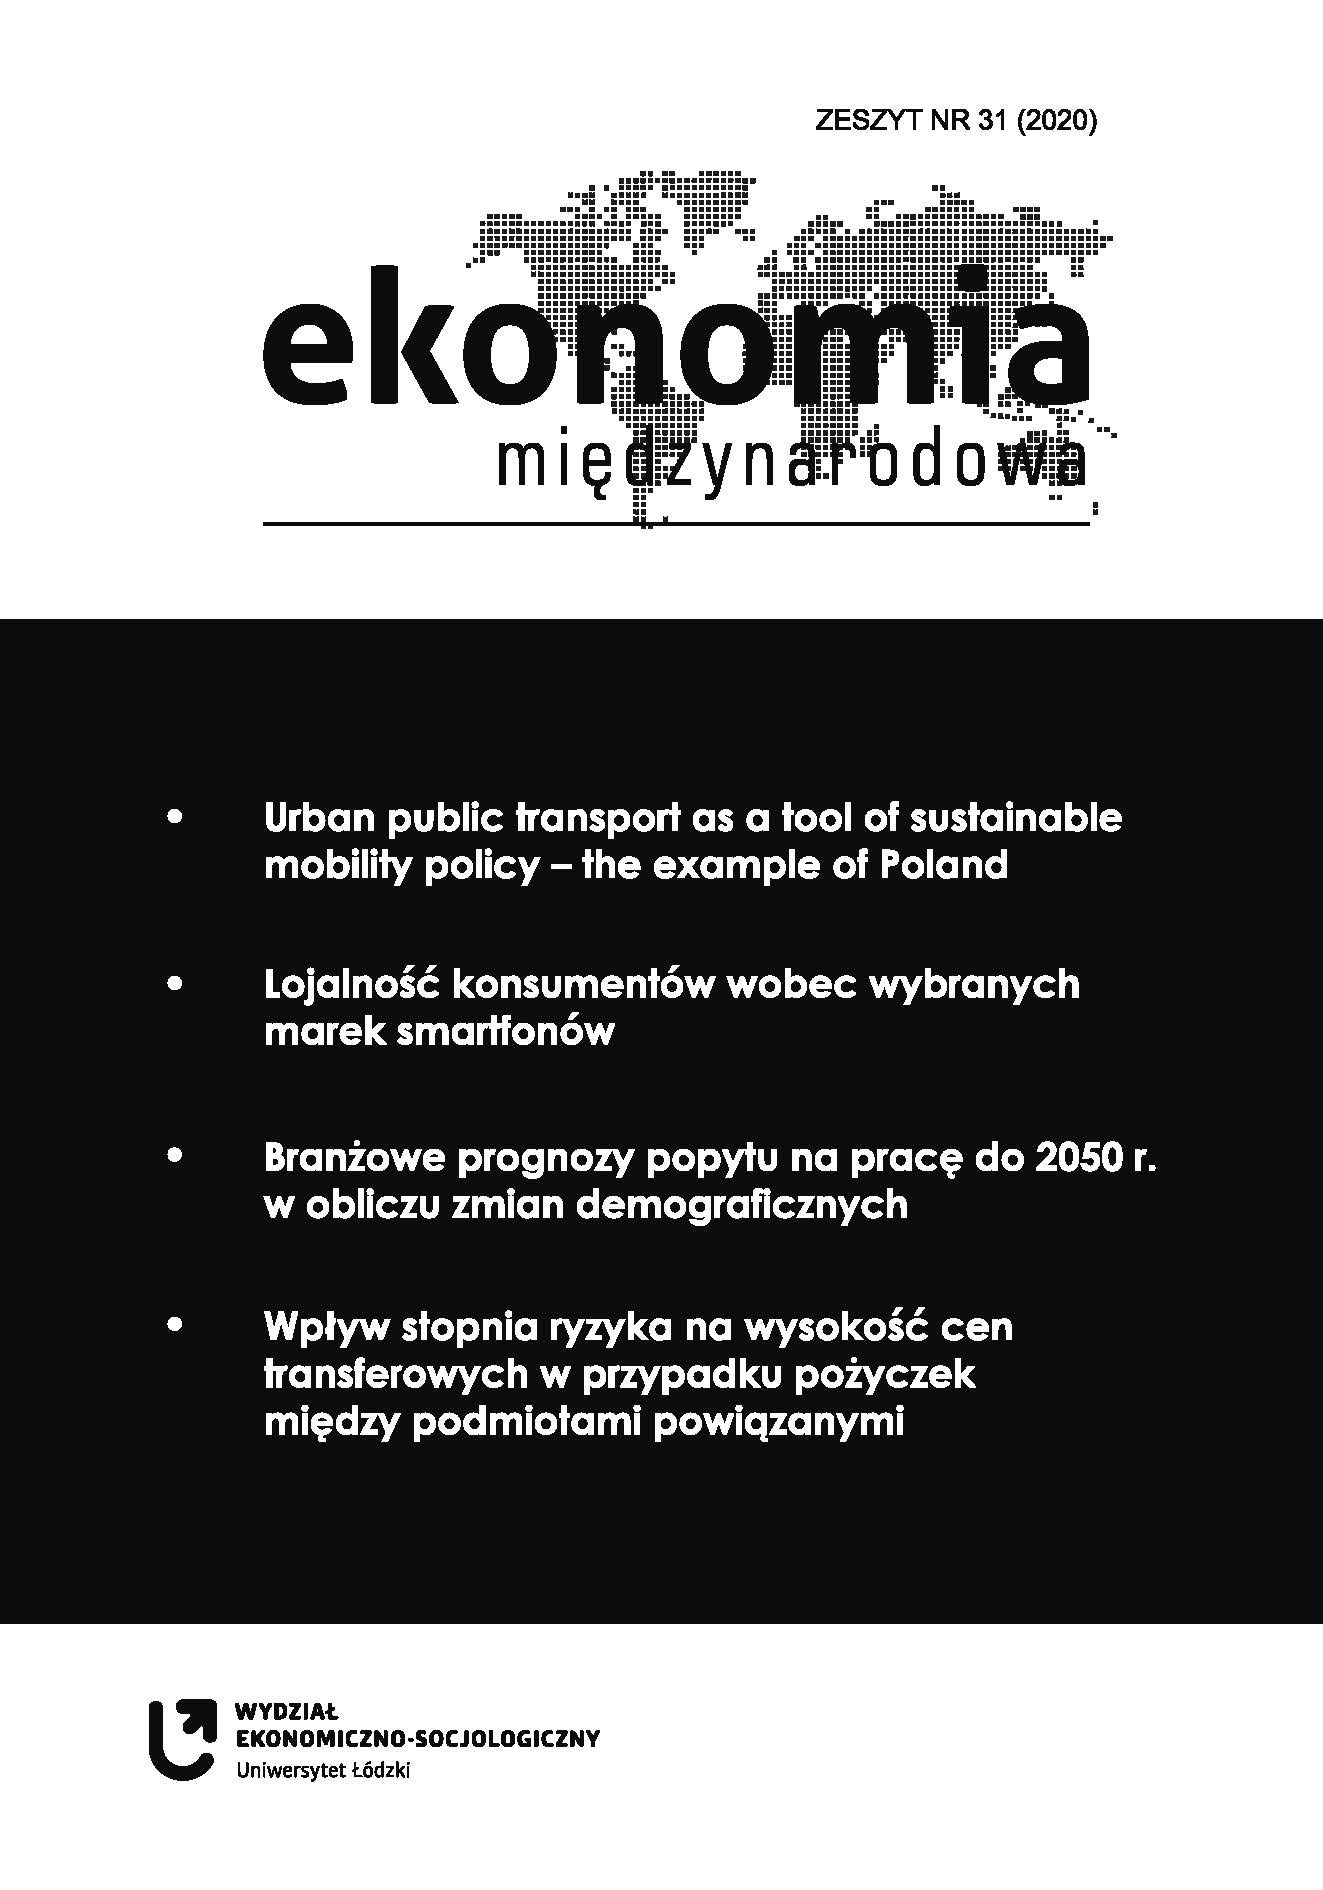 Rzeczywista liczba dzieci i młodzieży przebywających w instytucjonalnych formach opieki całkowitej w Polsce a wyzwania procesu deinstytucjonalizacji